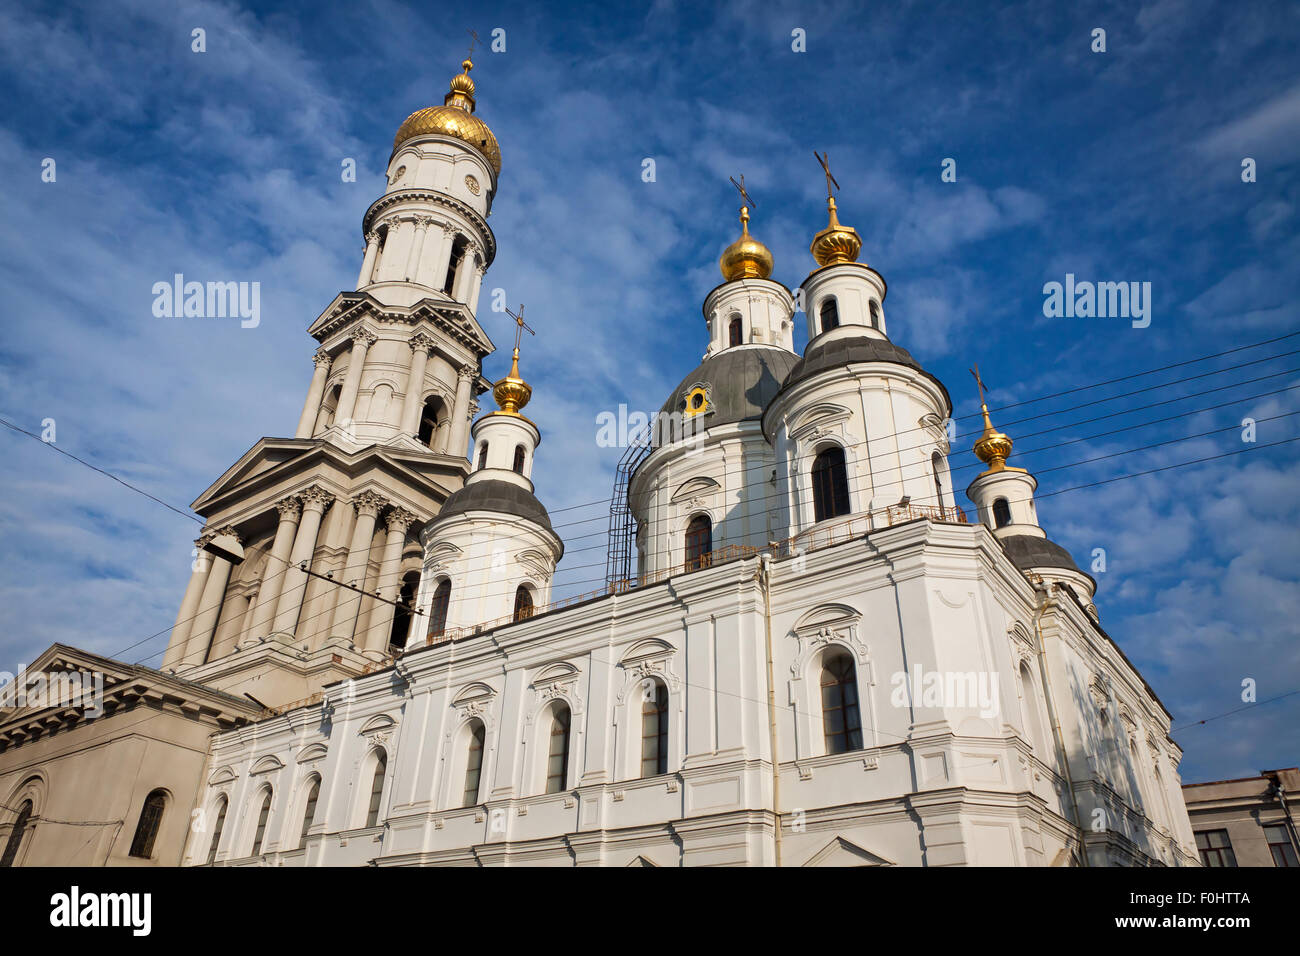 Prise en charge ou la cathédrale de la Dormition à Kharkiv, Ukraine. C'est la principale église orthodoxe de la ville de Kharkiv Banque D'Images